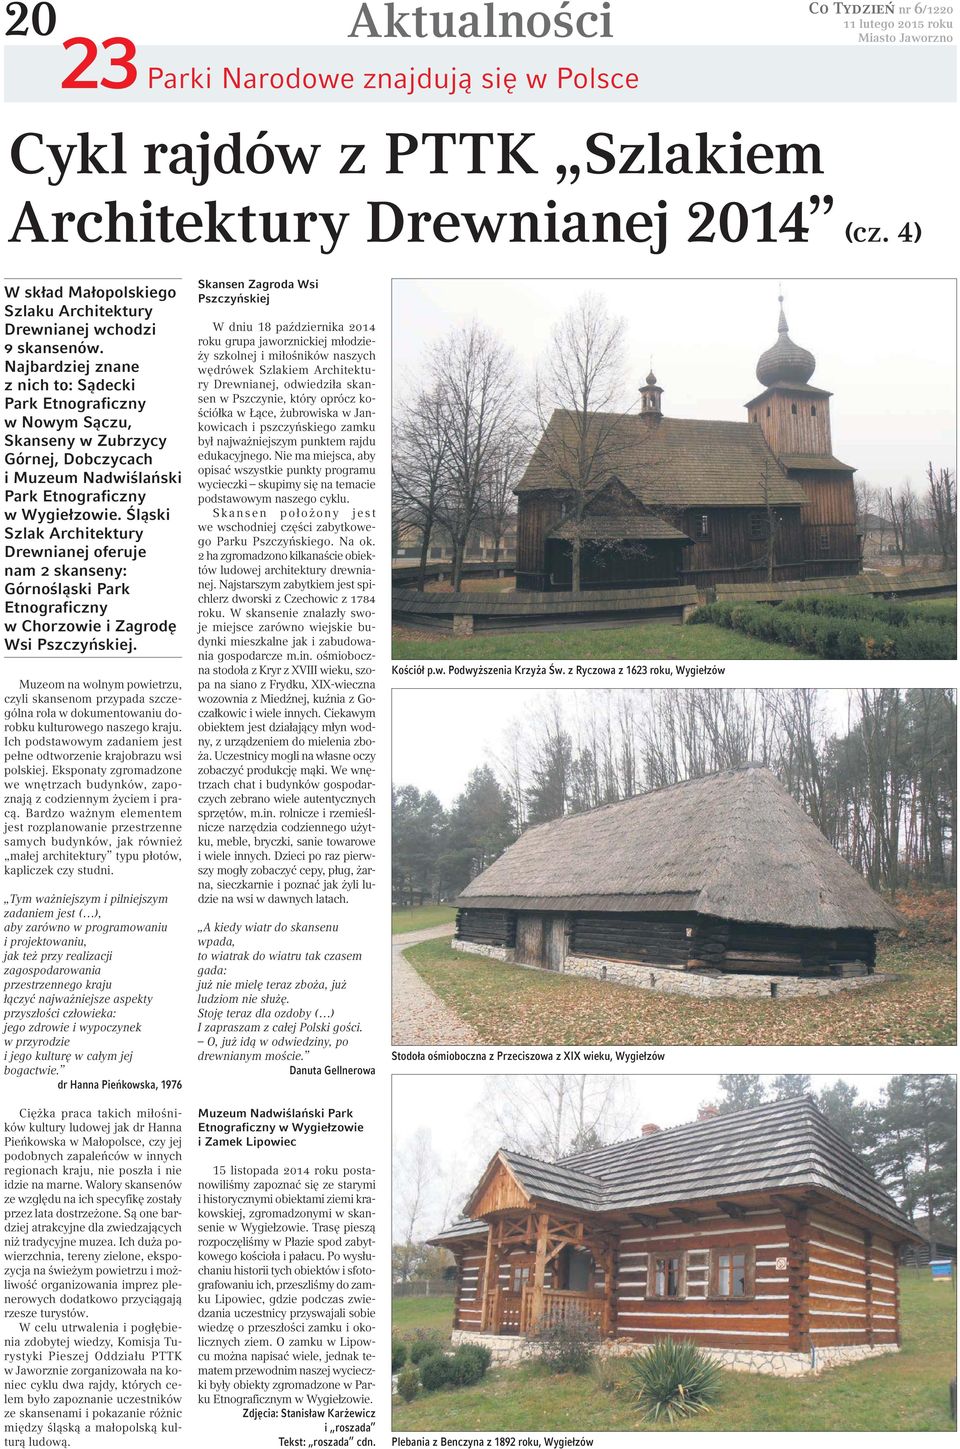 Śląski Szlak Architektury Drewnianej oferuje nam 2 skanseny: Górnośląski Park Etnograficzny w Chorzowie i Zagrodę Wsi Pszczyńskiej.